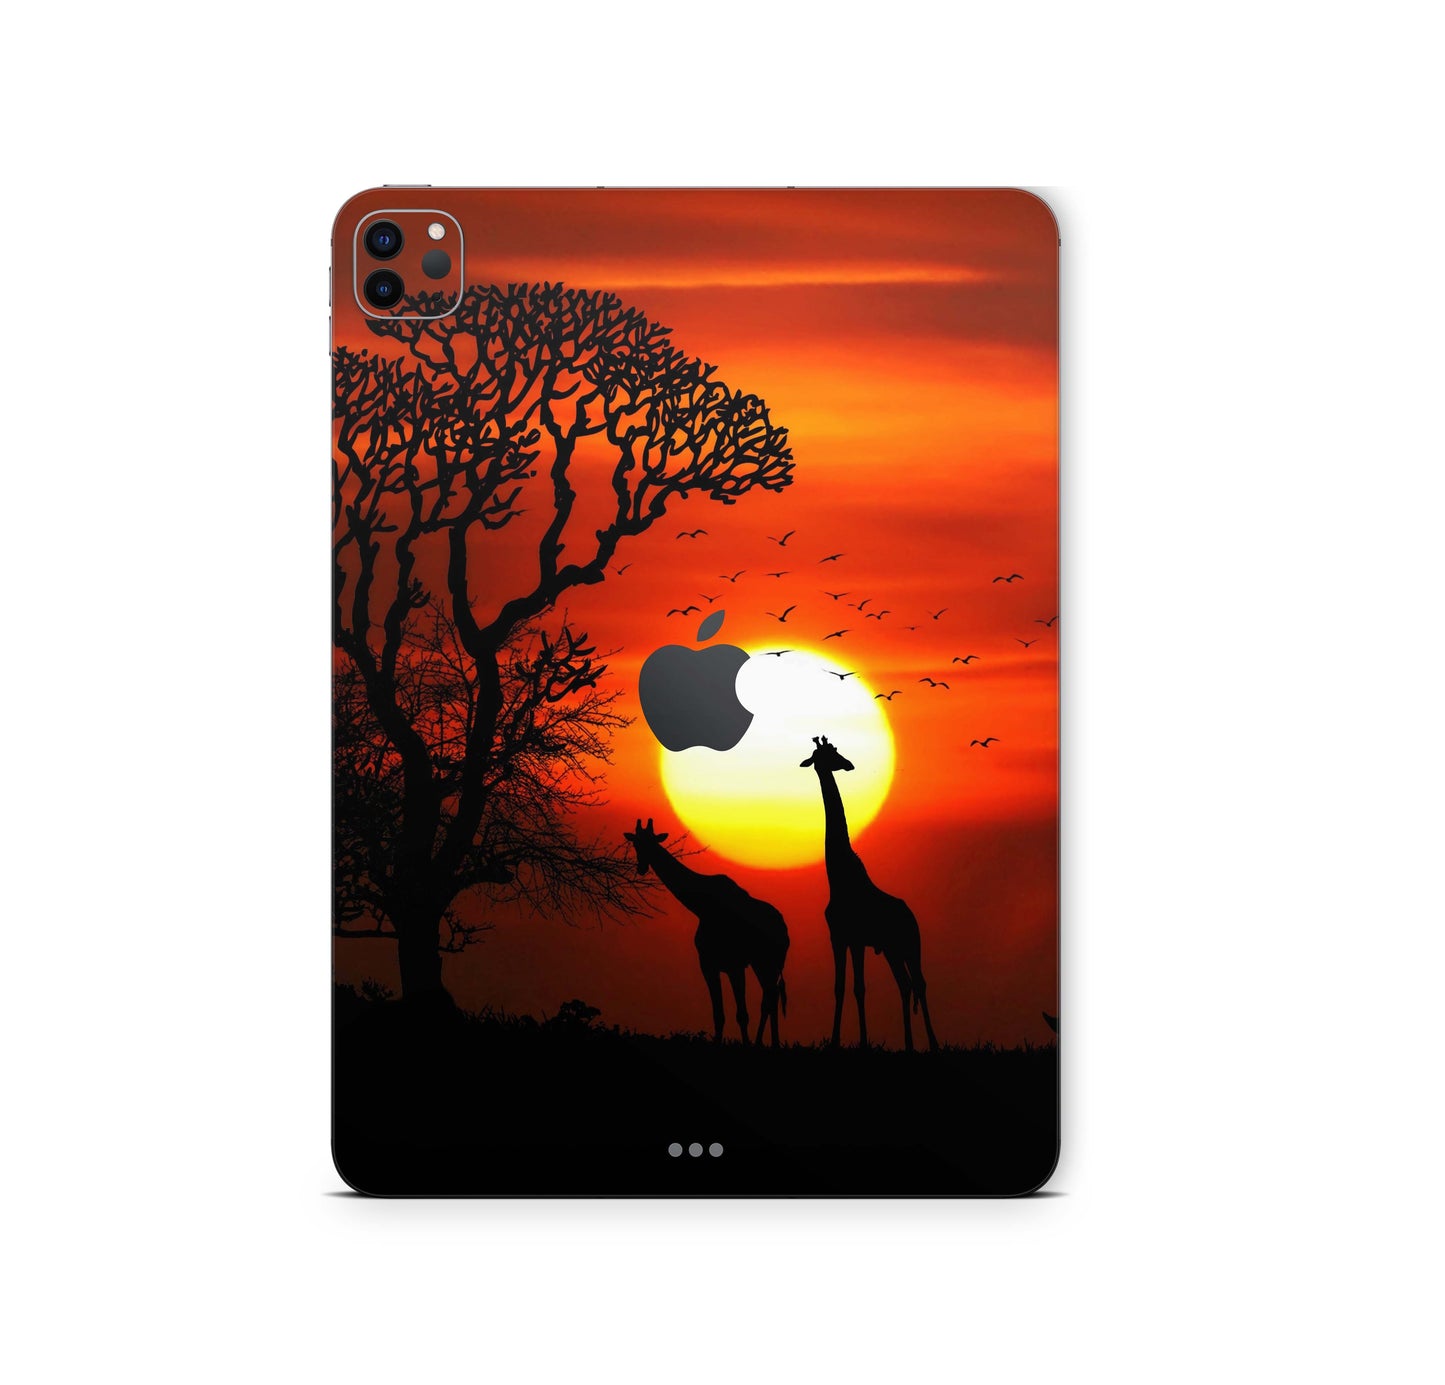 iPad Pro Skin 11" 2.Generation A2228 Design Cover Folie Vinyl Skins & Wraps Aufkleber Skins4u Afrika  